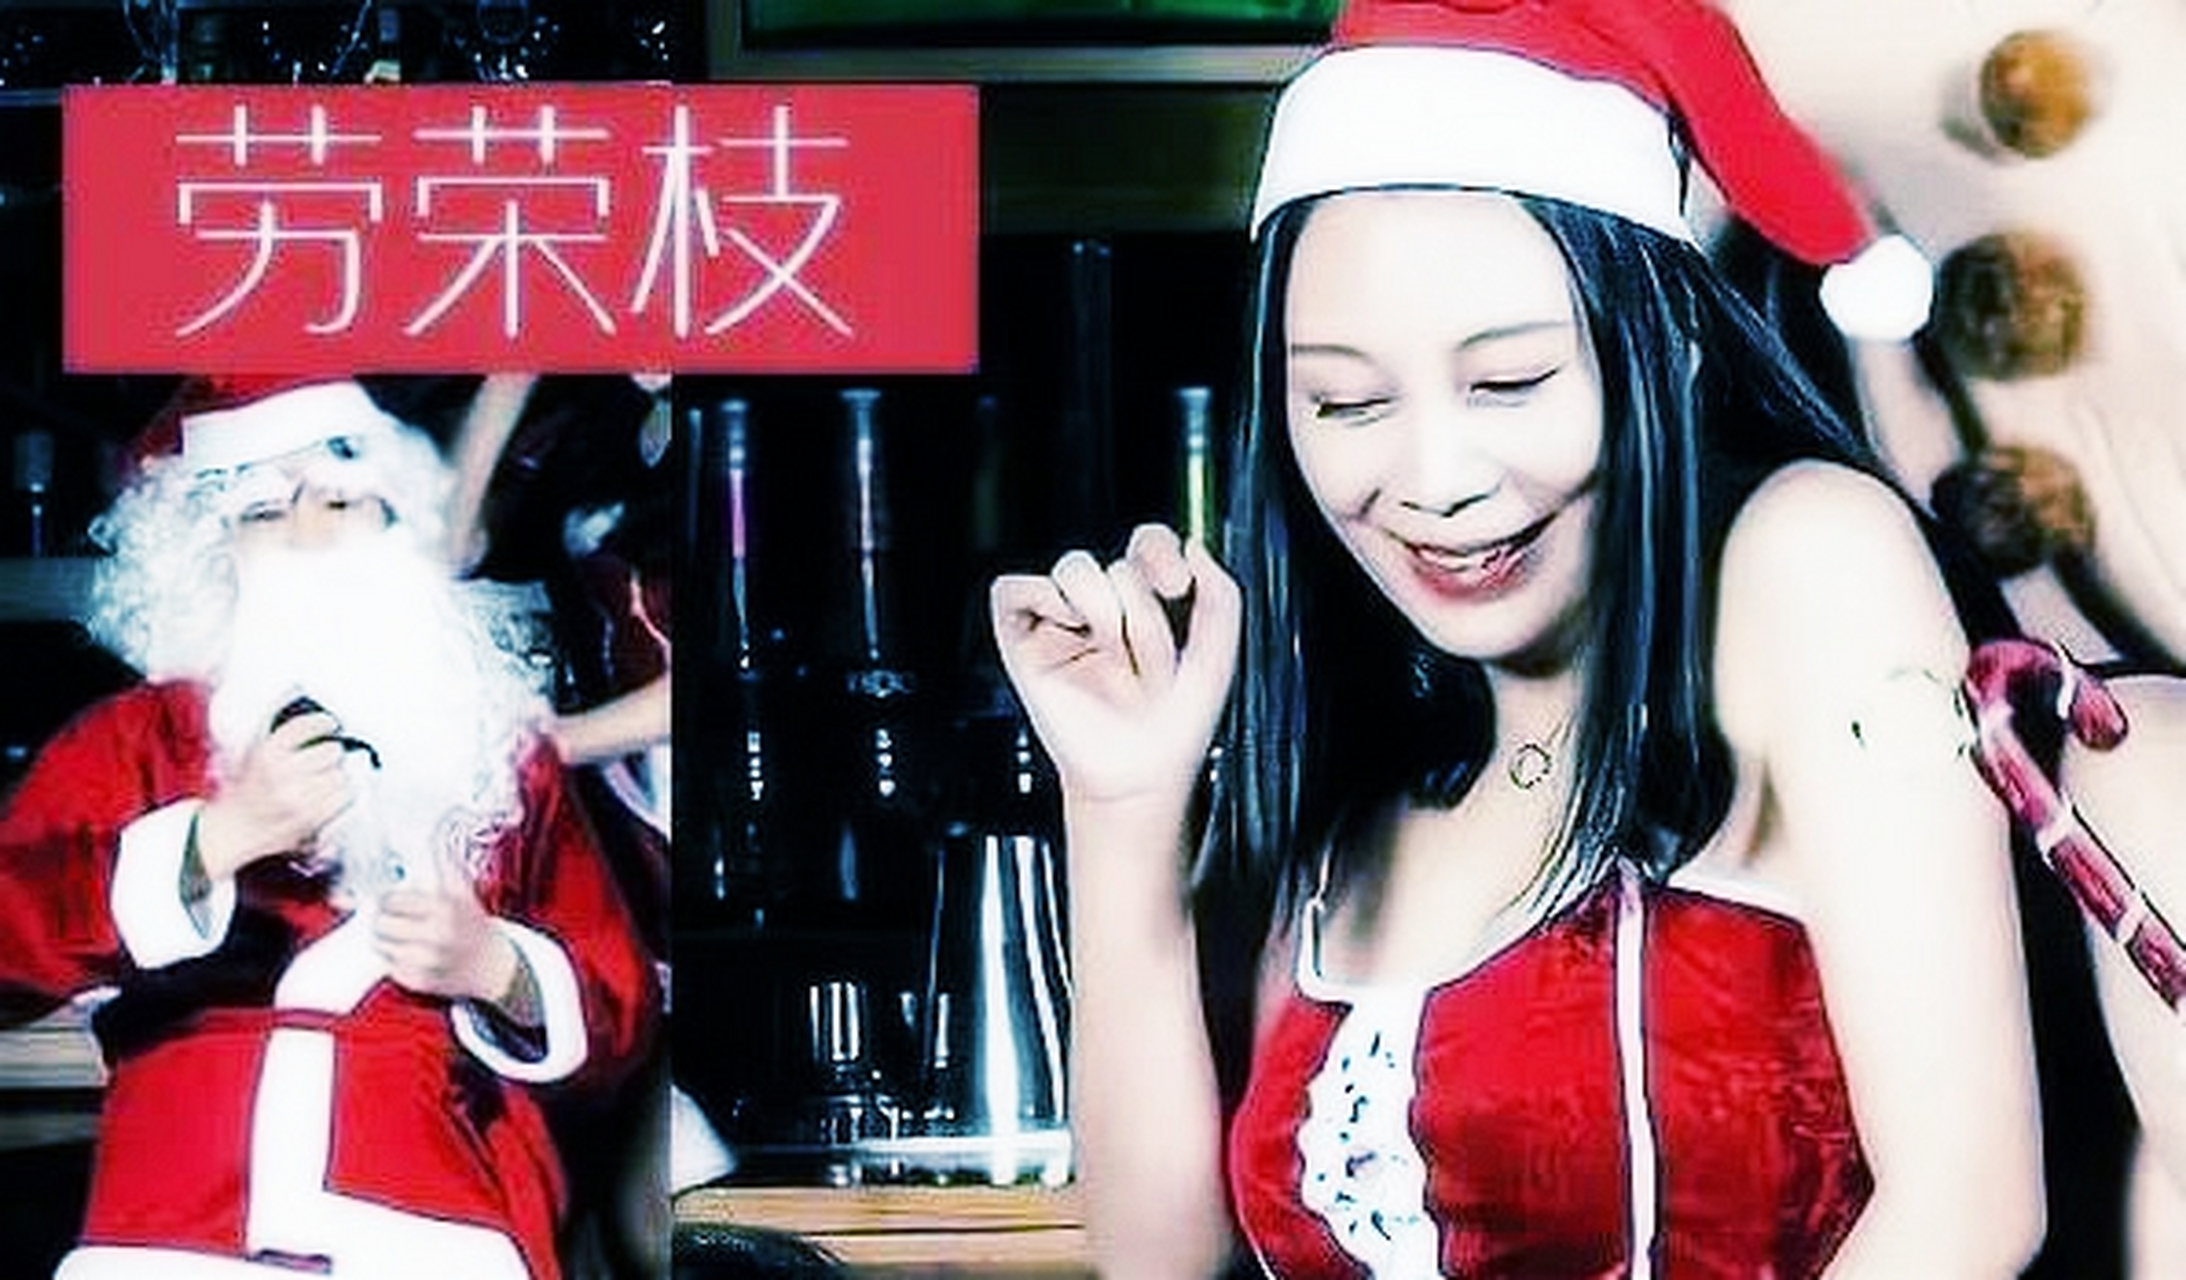 她戴着圣诞帽,在福建厦门的一个酒吧里和朋友庆祝,面前摆着一堆圣诞